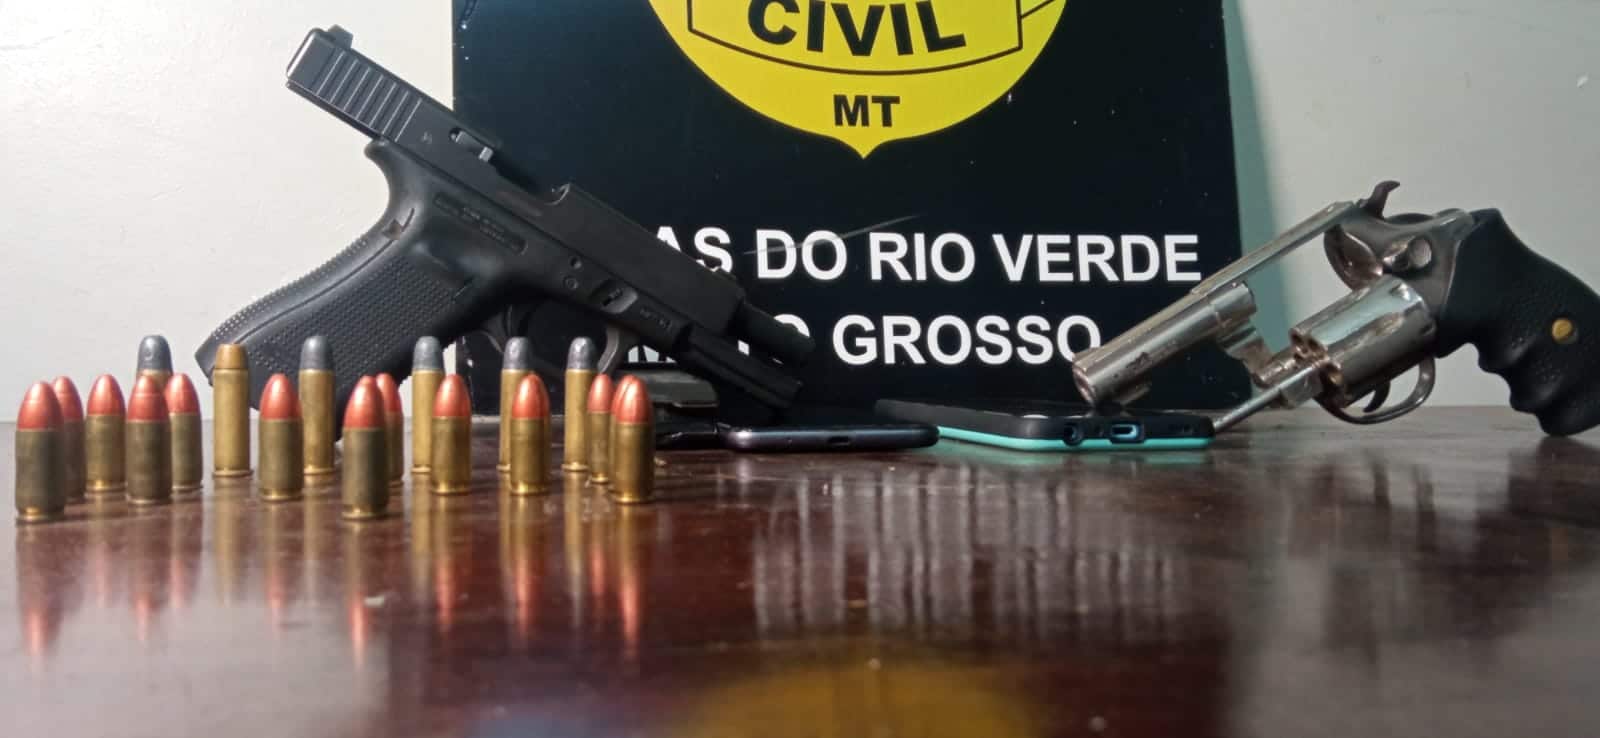 Autores de sequestro e tentativa de homicídio são presos em Lucas do Rio Verde